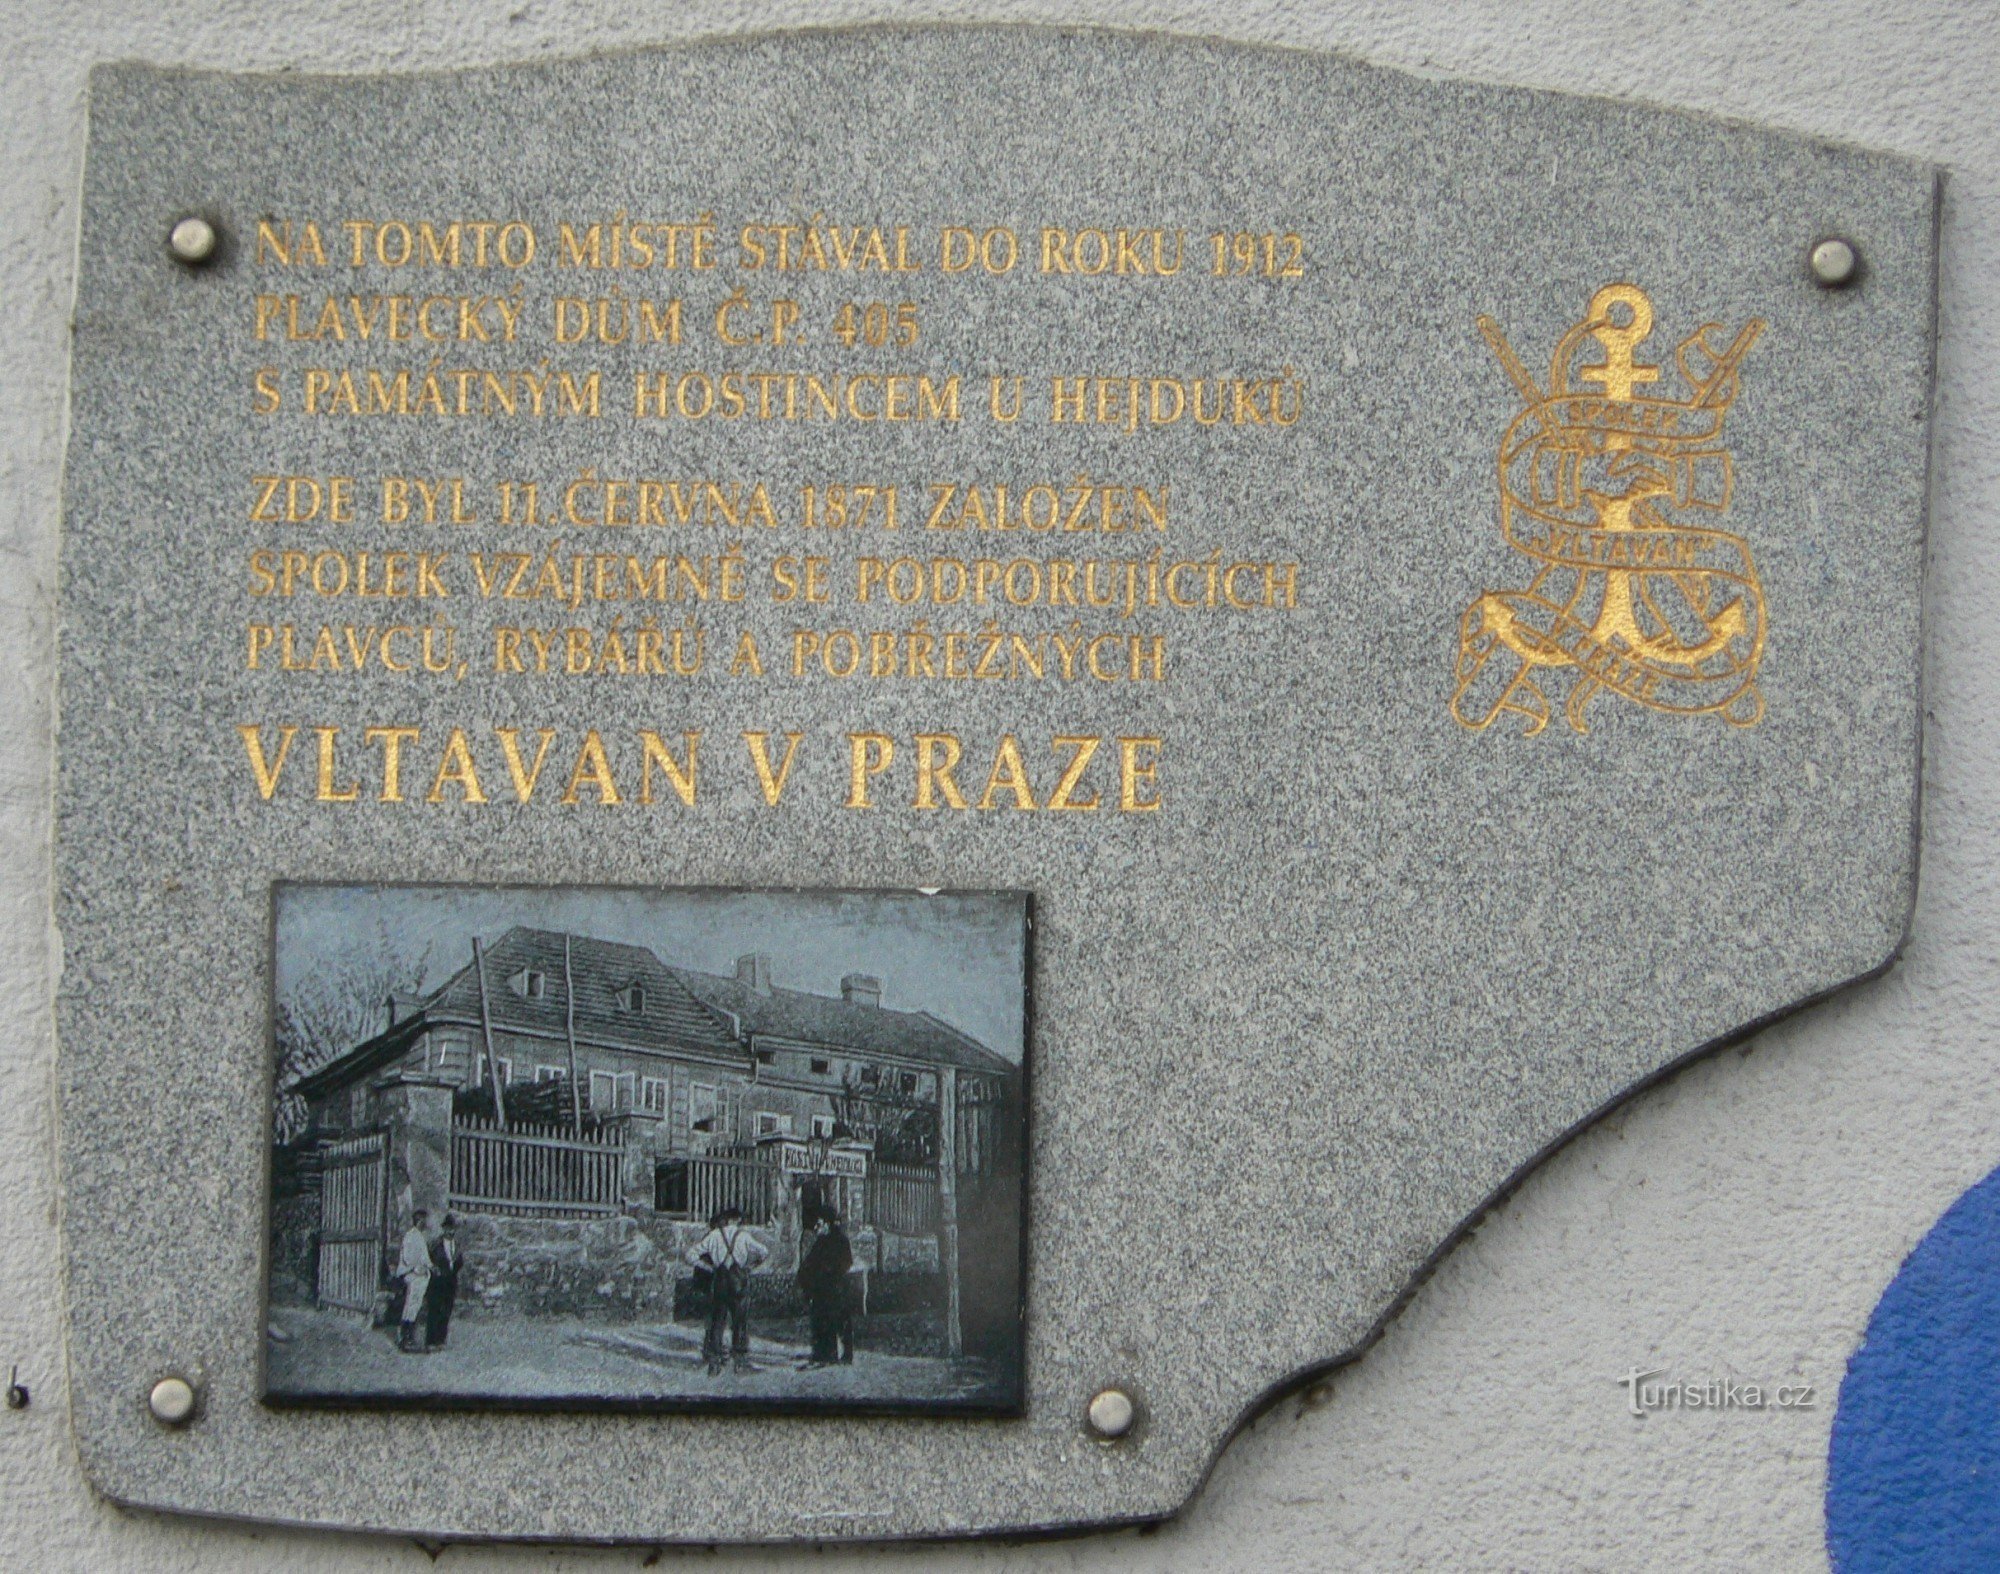 Spominska plošča društva Vltavan